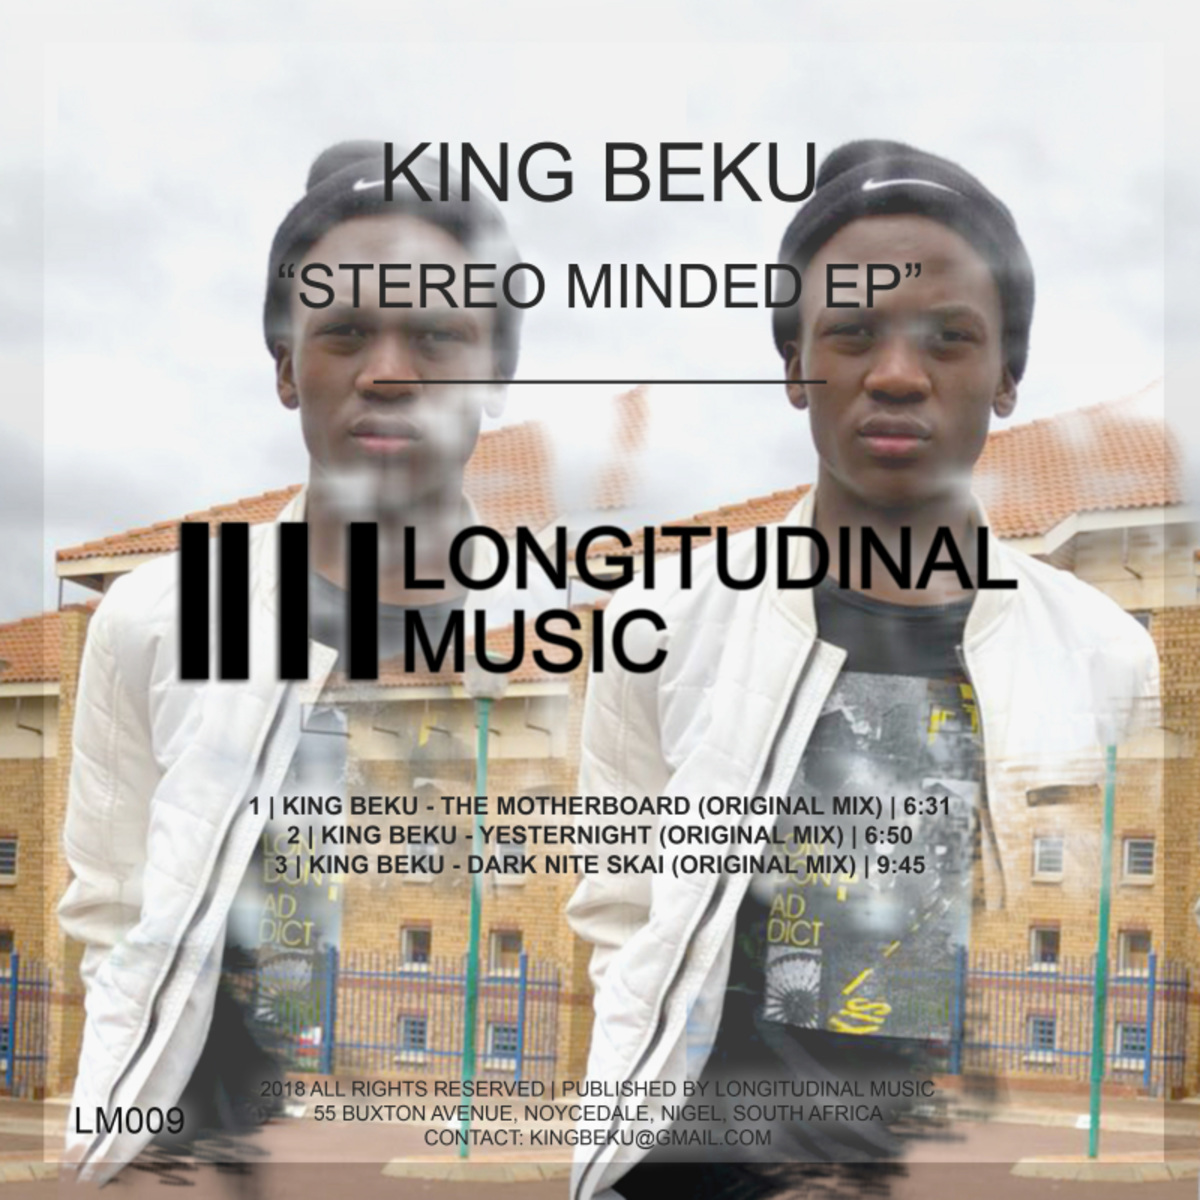 King Beku - Stereo Minded / Longitudinal Music